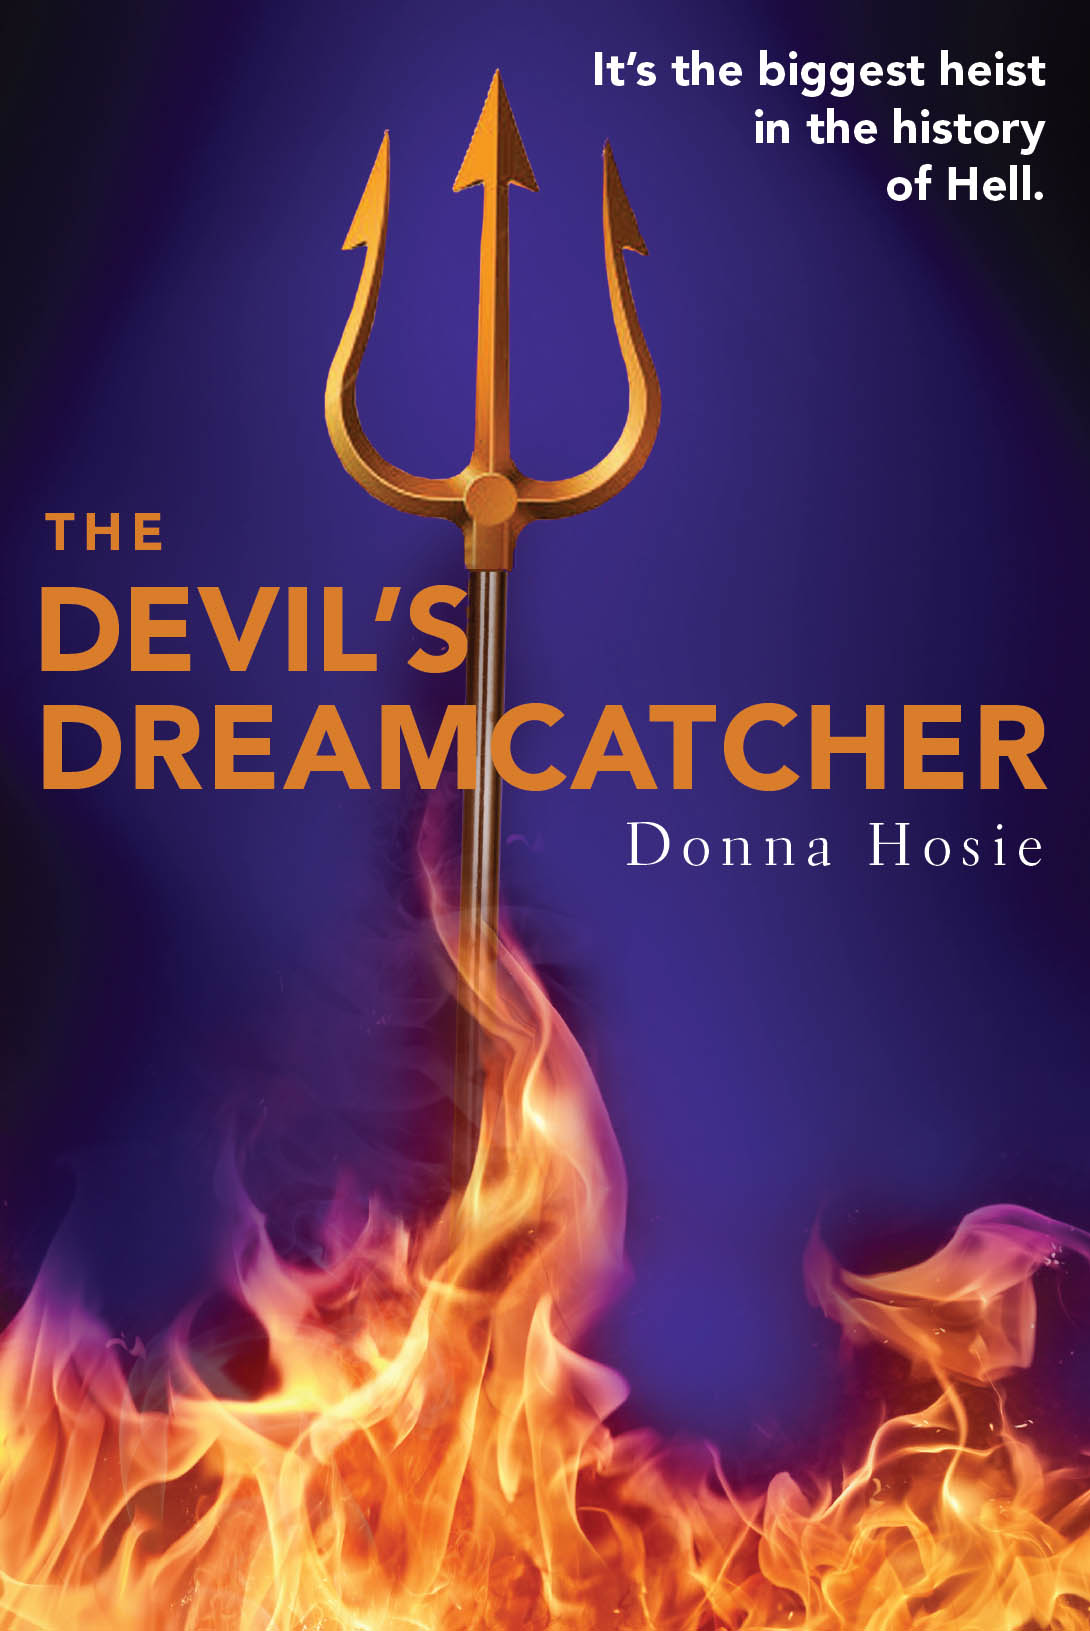 The Devil's Dreamcatcher (2015) by Donna Hosie